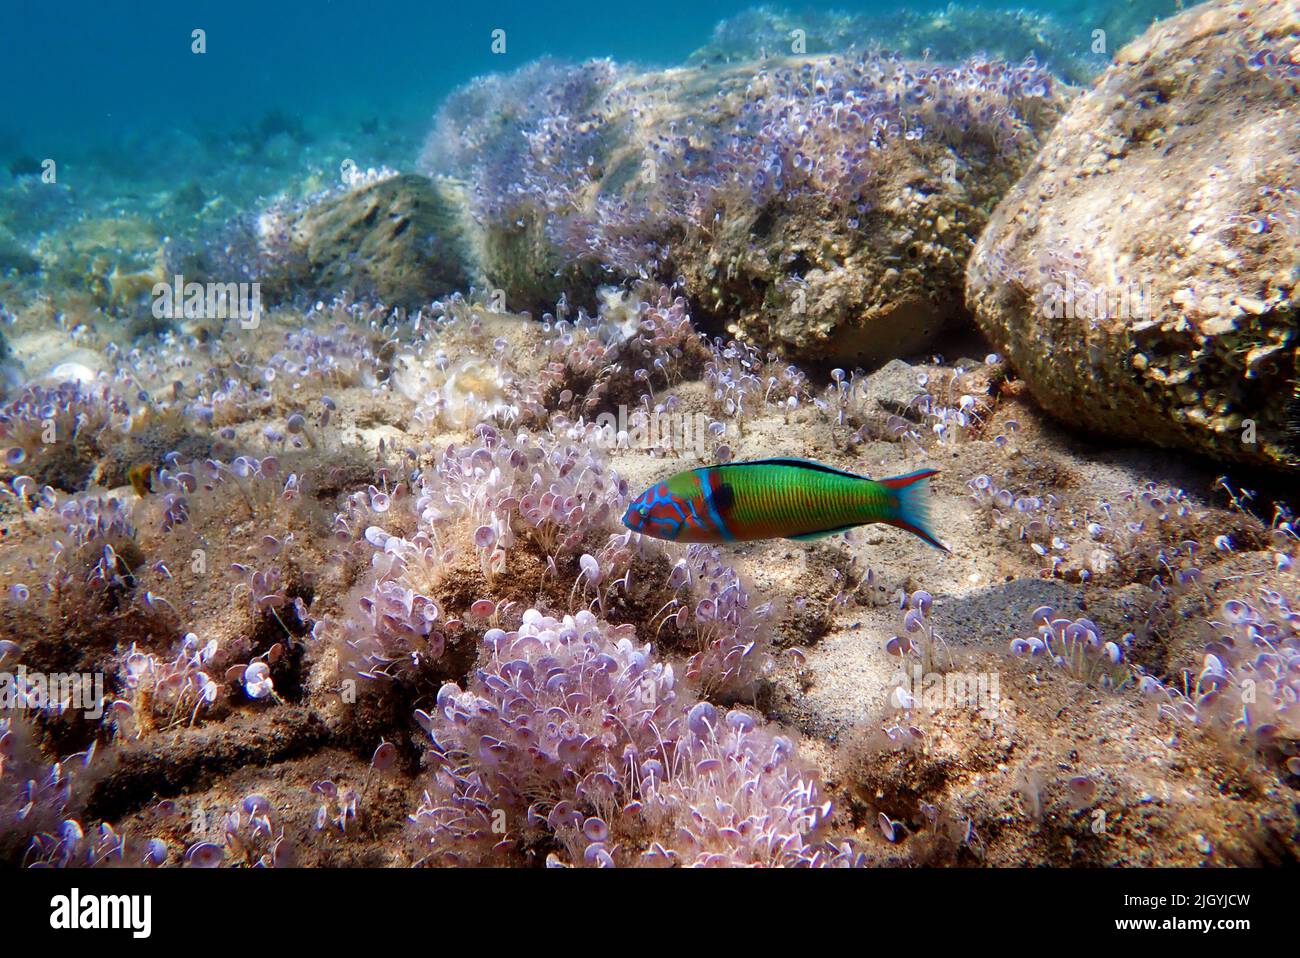 Grüner, männlicher, verzierter Lippfisch im Mittelmeer - Thalassoma pavo Stockfoto